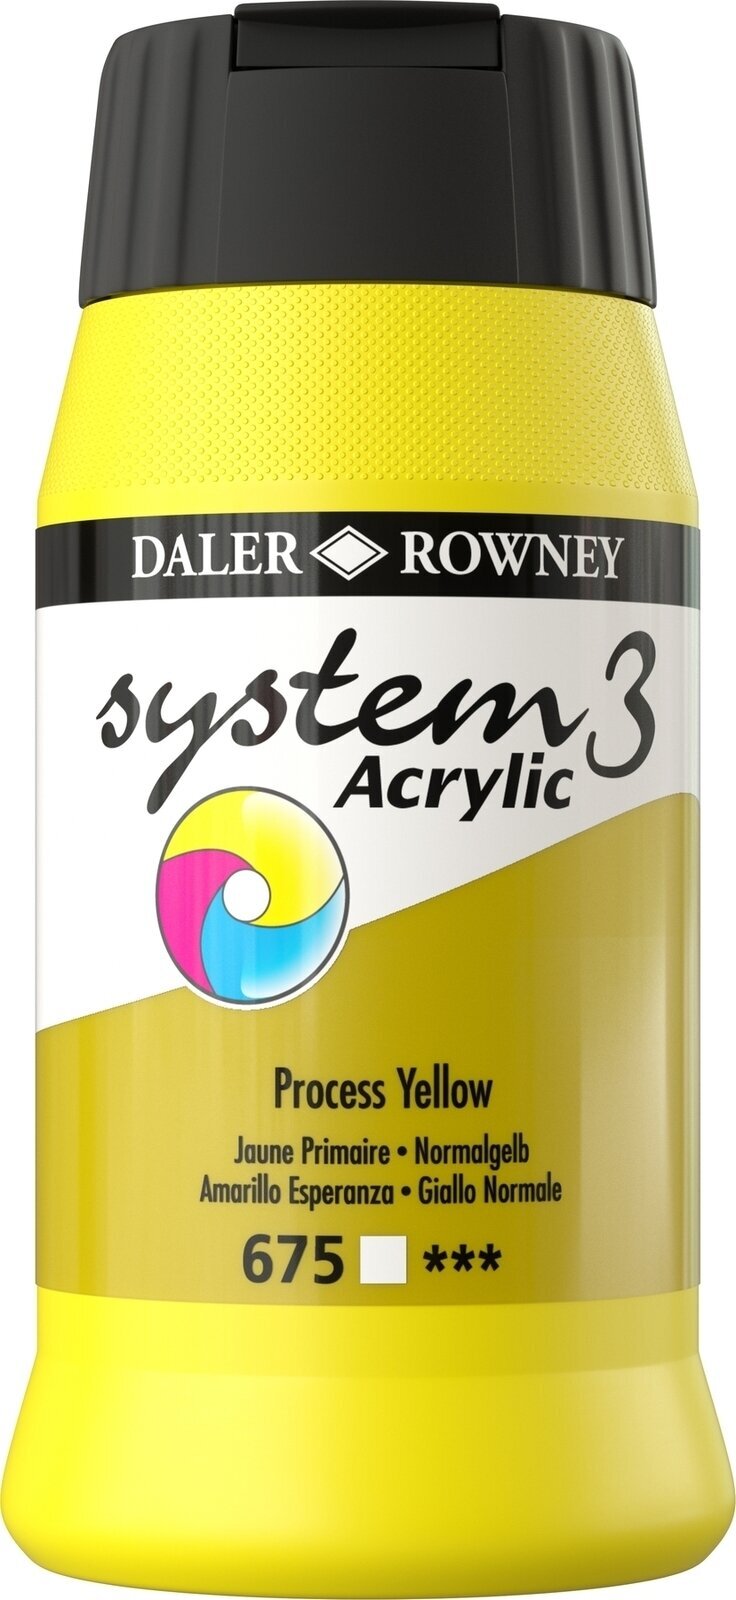 Akryylimaali Daler Rowney System3 Akryylimaali Process Yellow 500 ml 1 kpl